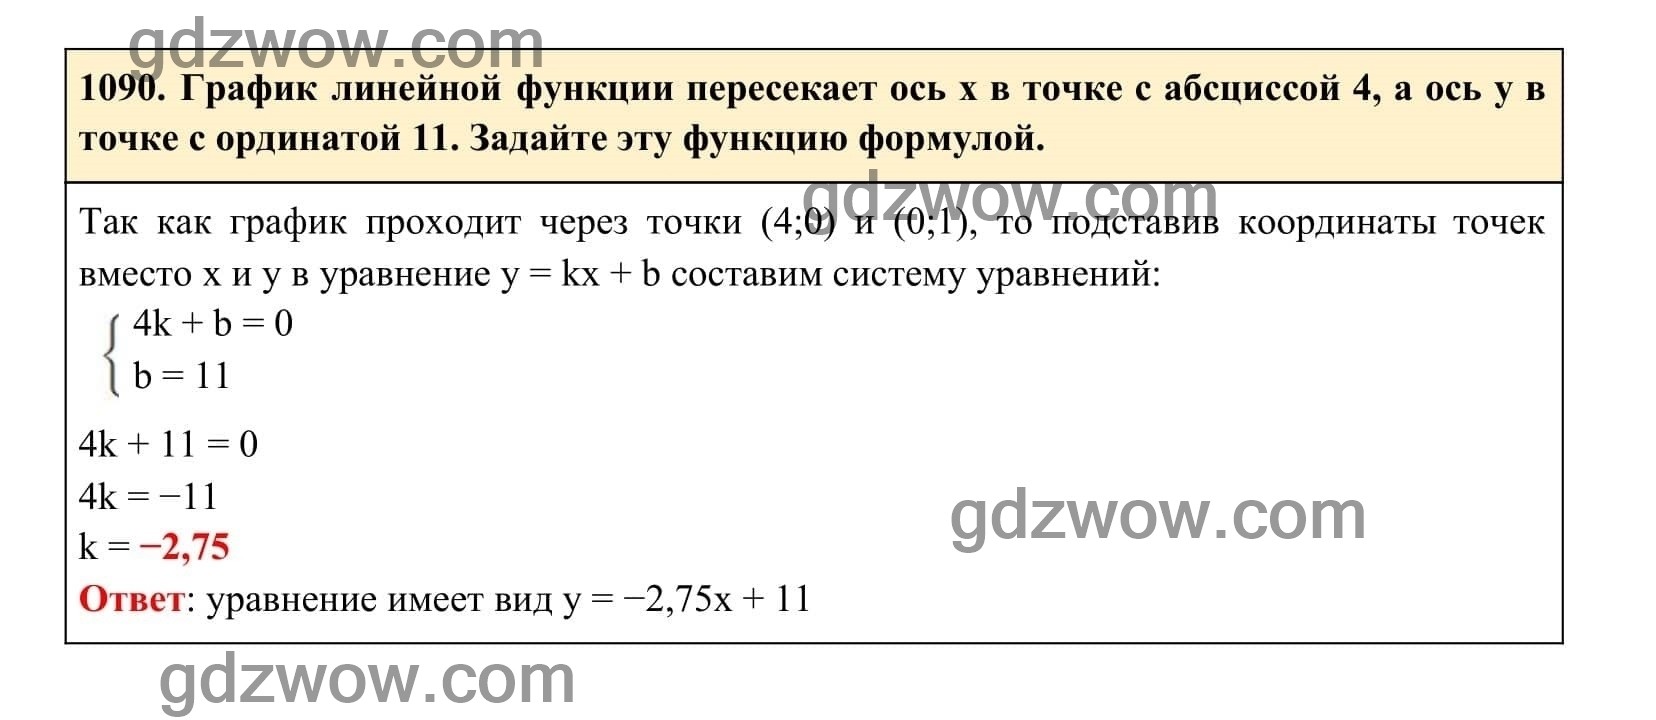 Упражнение 1090 - ГДЗ по Алгебре 7 класс Учебник Макарычев (решебник) - GDZwow